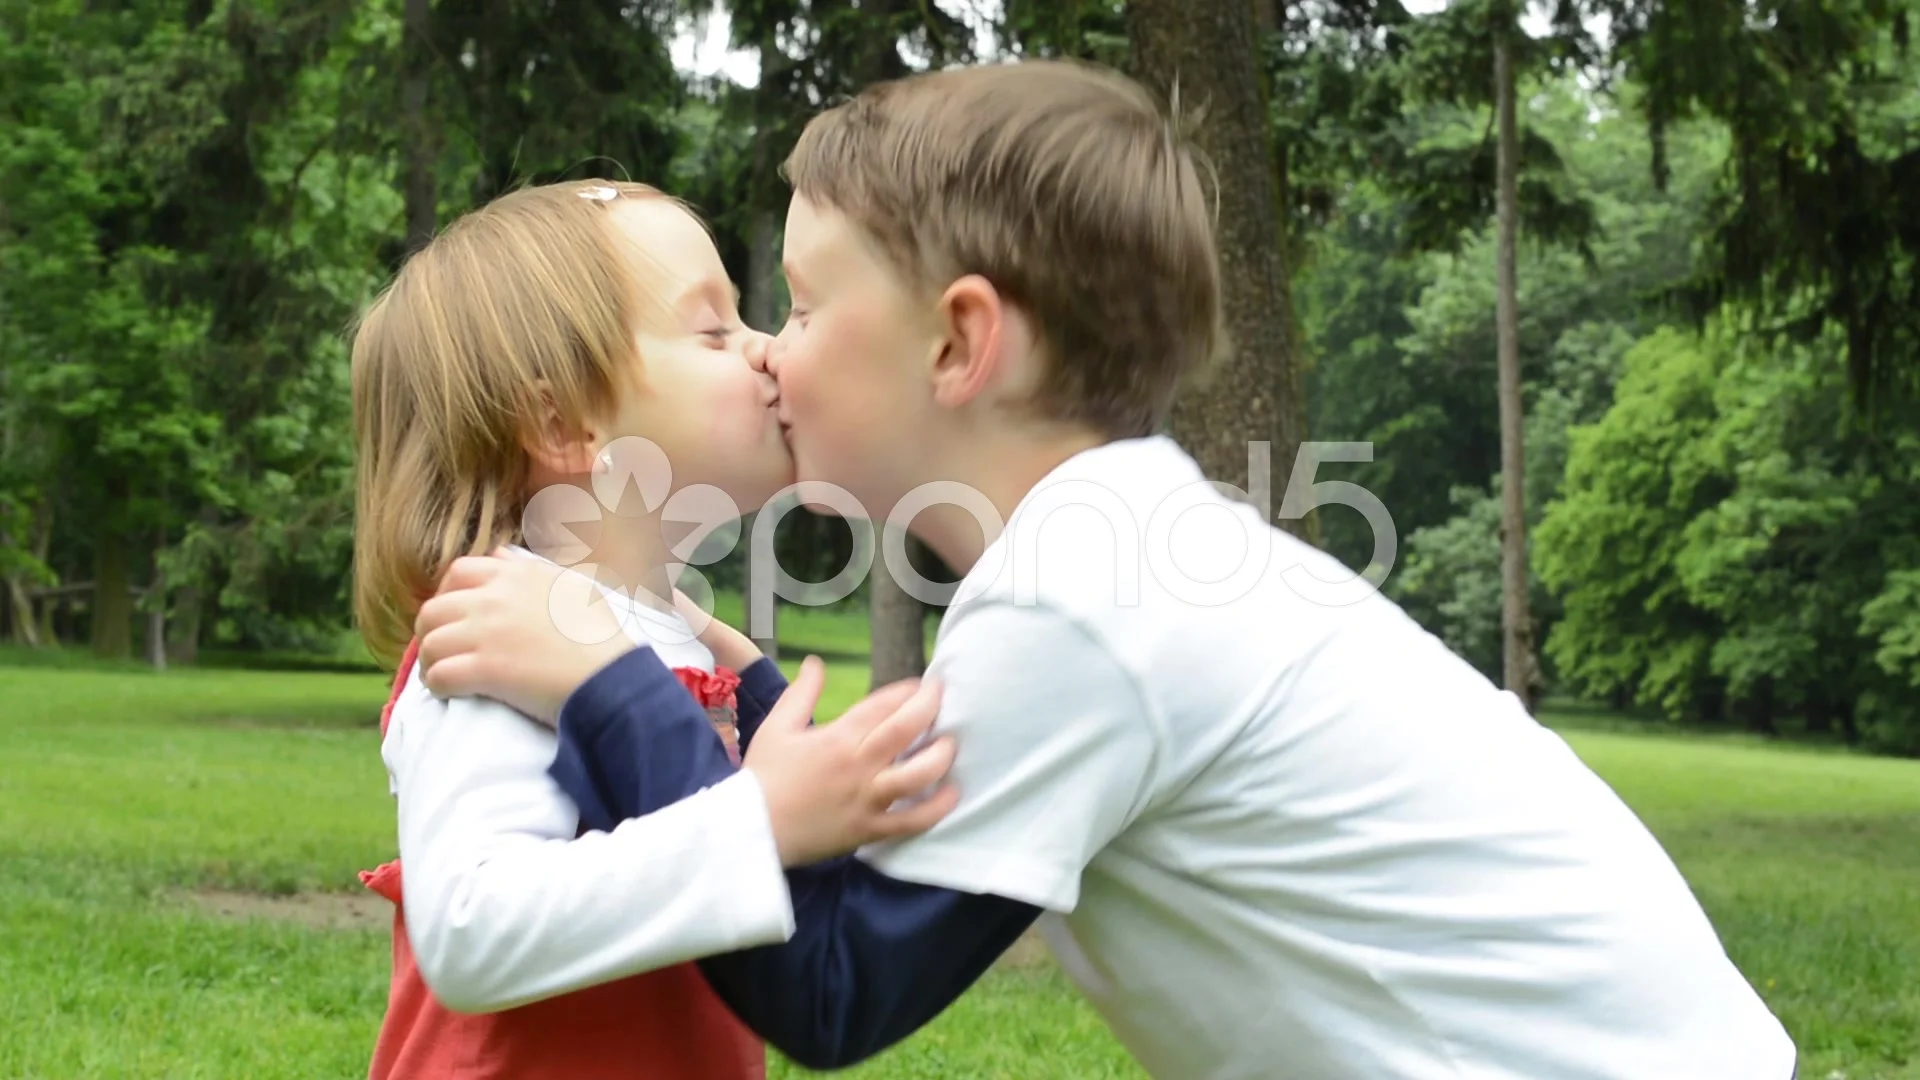 carlos urizar add girls that kiss boys photo